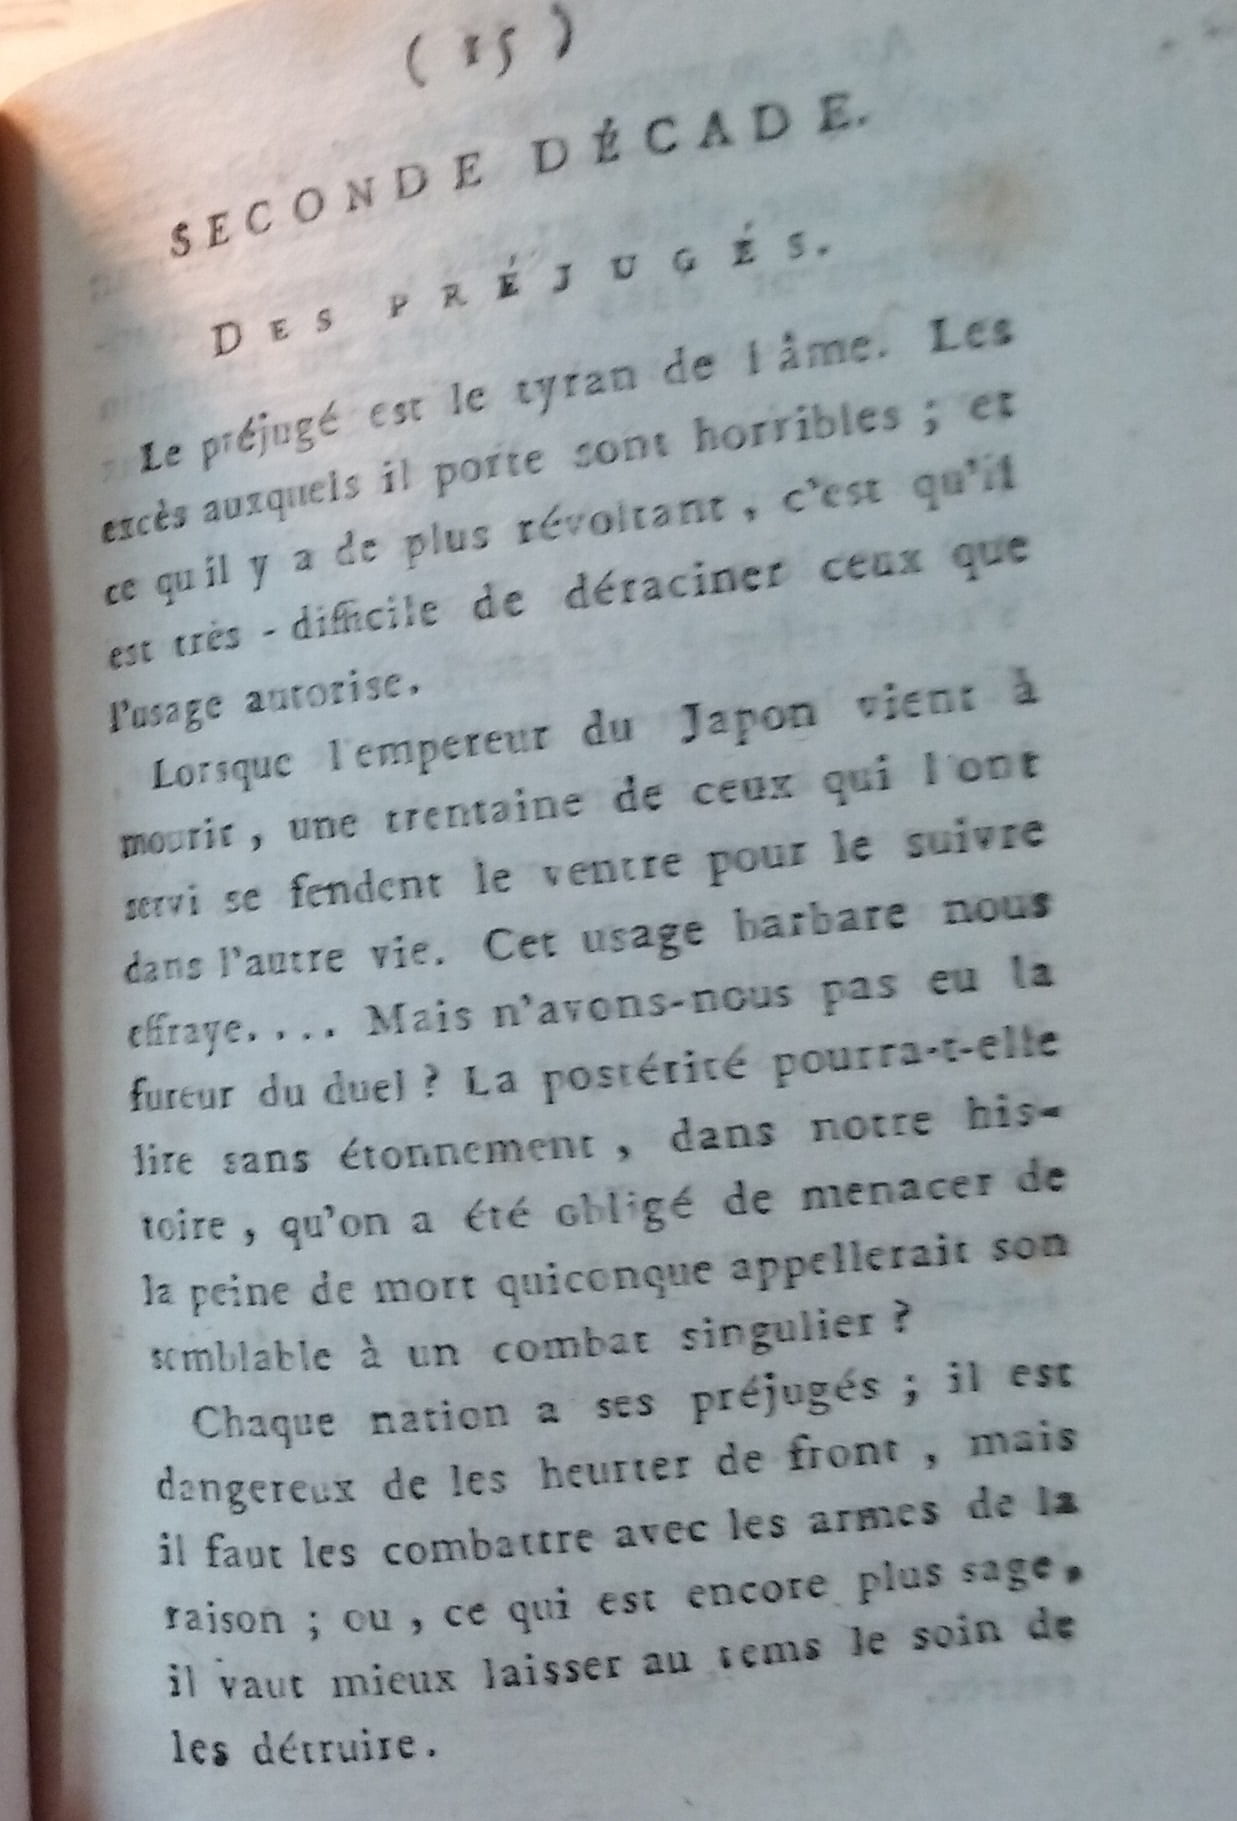 Warning about the danger of prejudices. Bibliothèque Historique de la Ville de Paris.